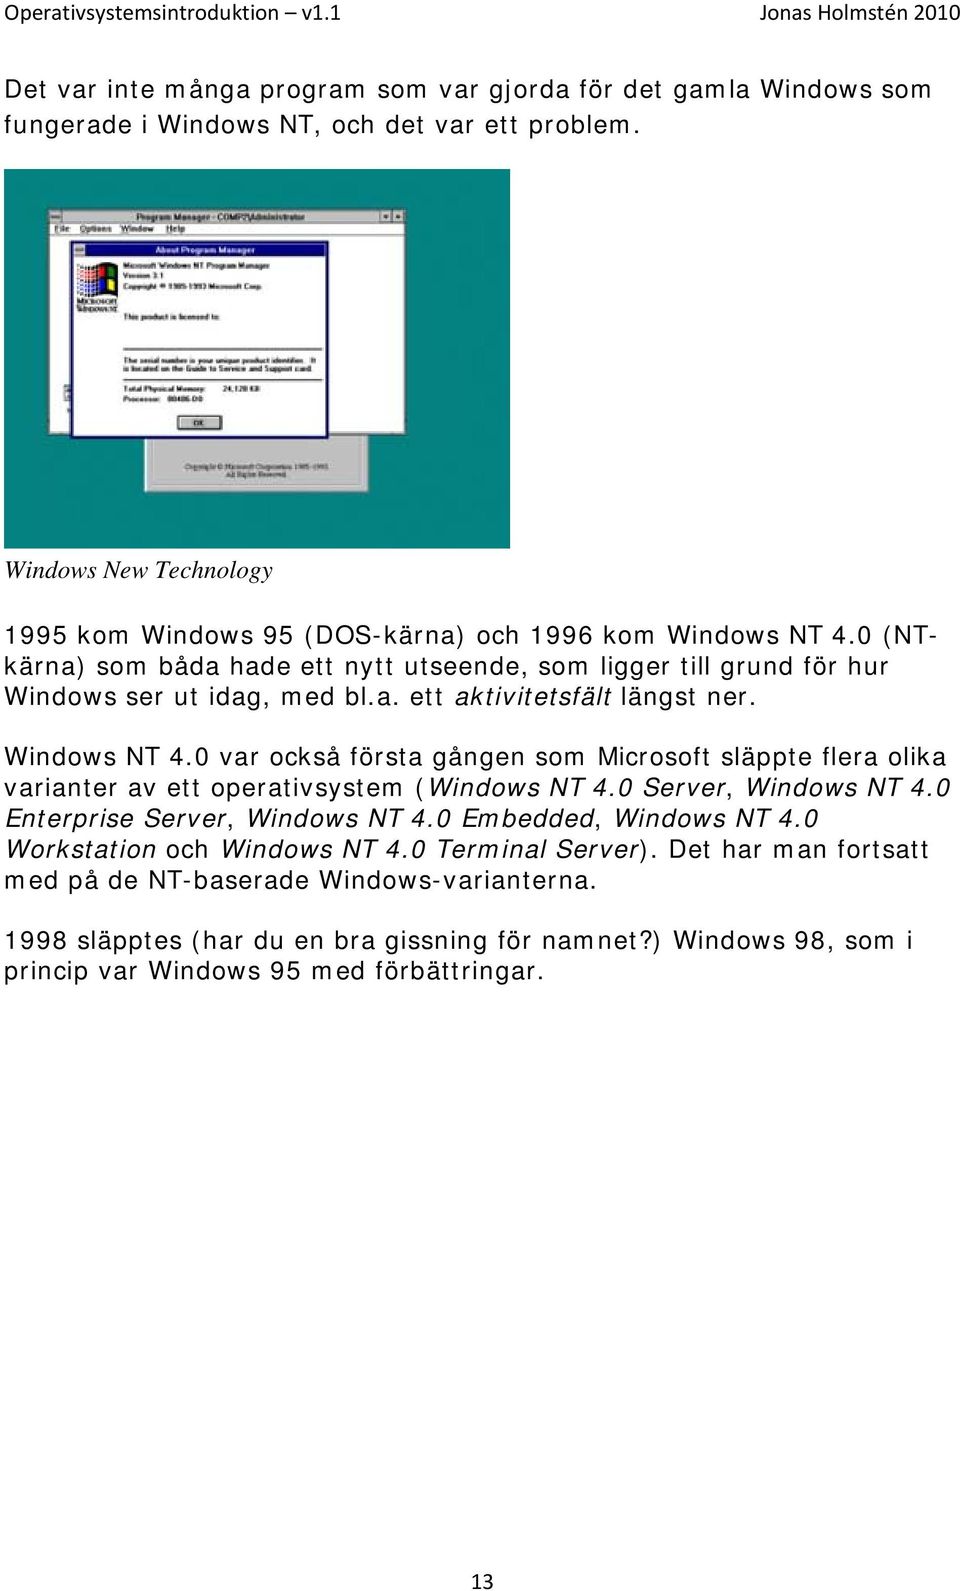 Windows NT 4.0 var också första gången som Microsoft släppte flera olika varianter av ett operativsystem (Windows NT 4.0 Server, Windows NT 4.0 Enterprise Server, Windows NT 4.